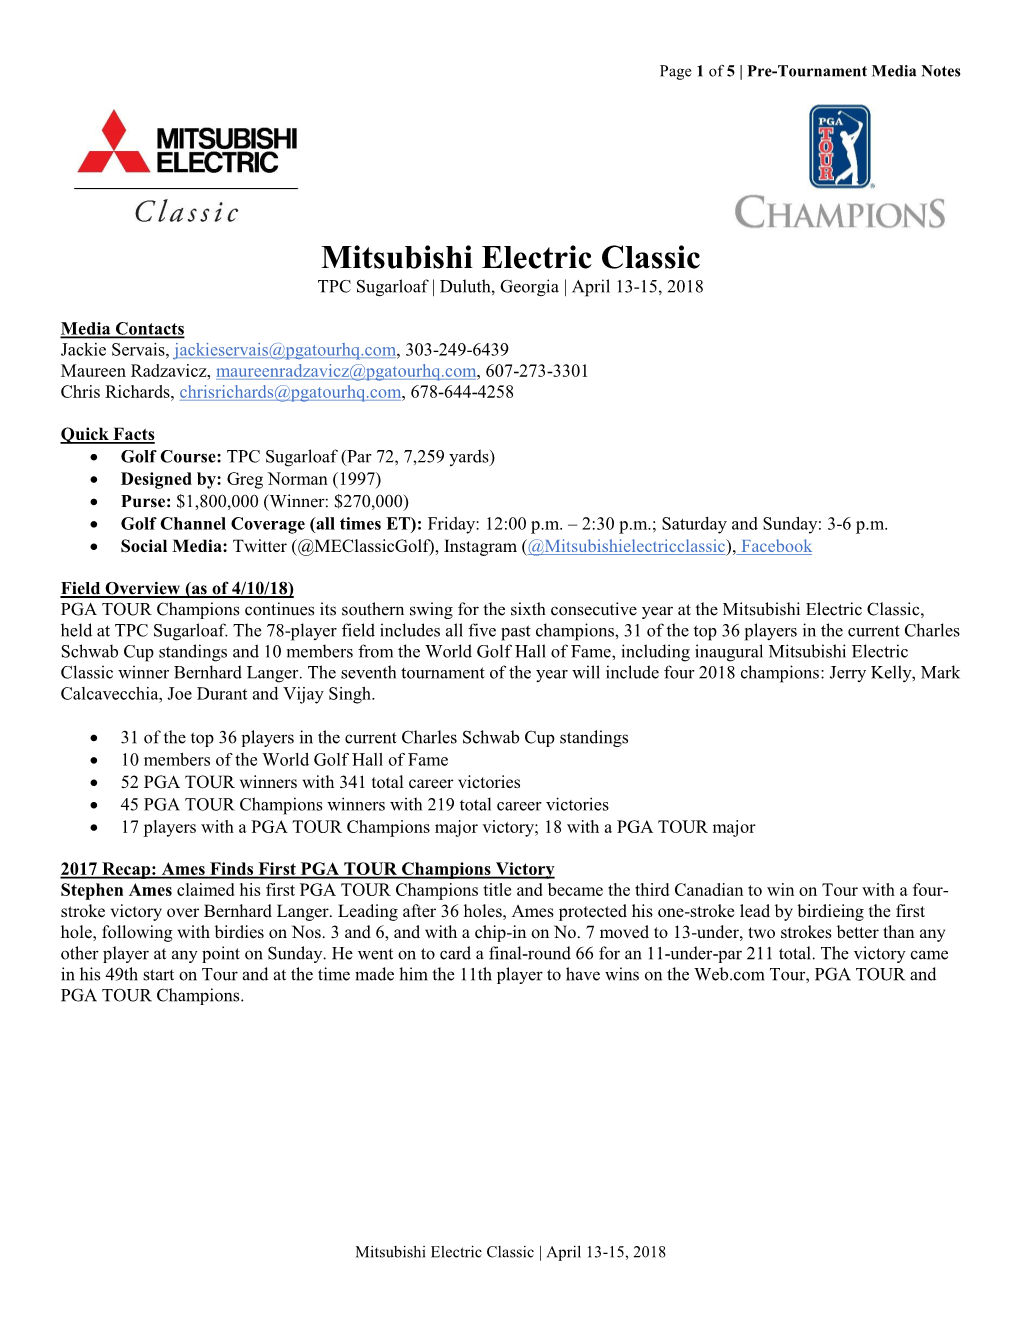 Mitsubishi Electric Classic TPC Sugarloaf | Duluth, Georgia | April 13-15, 2018